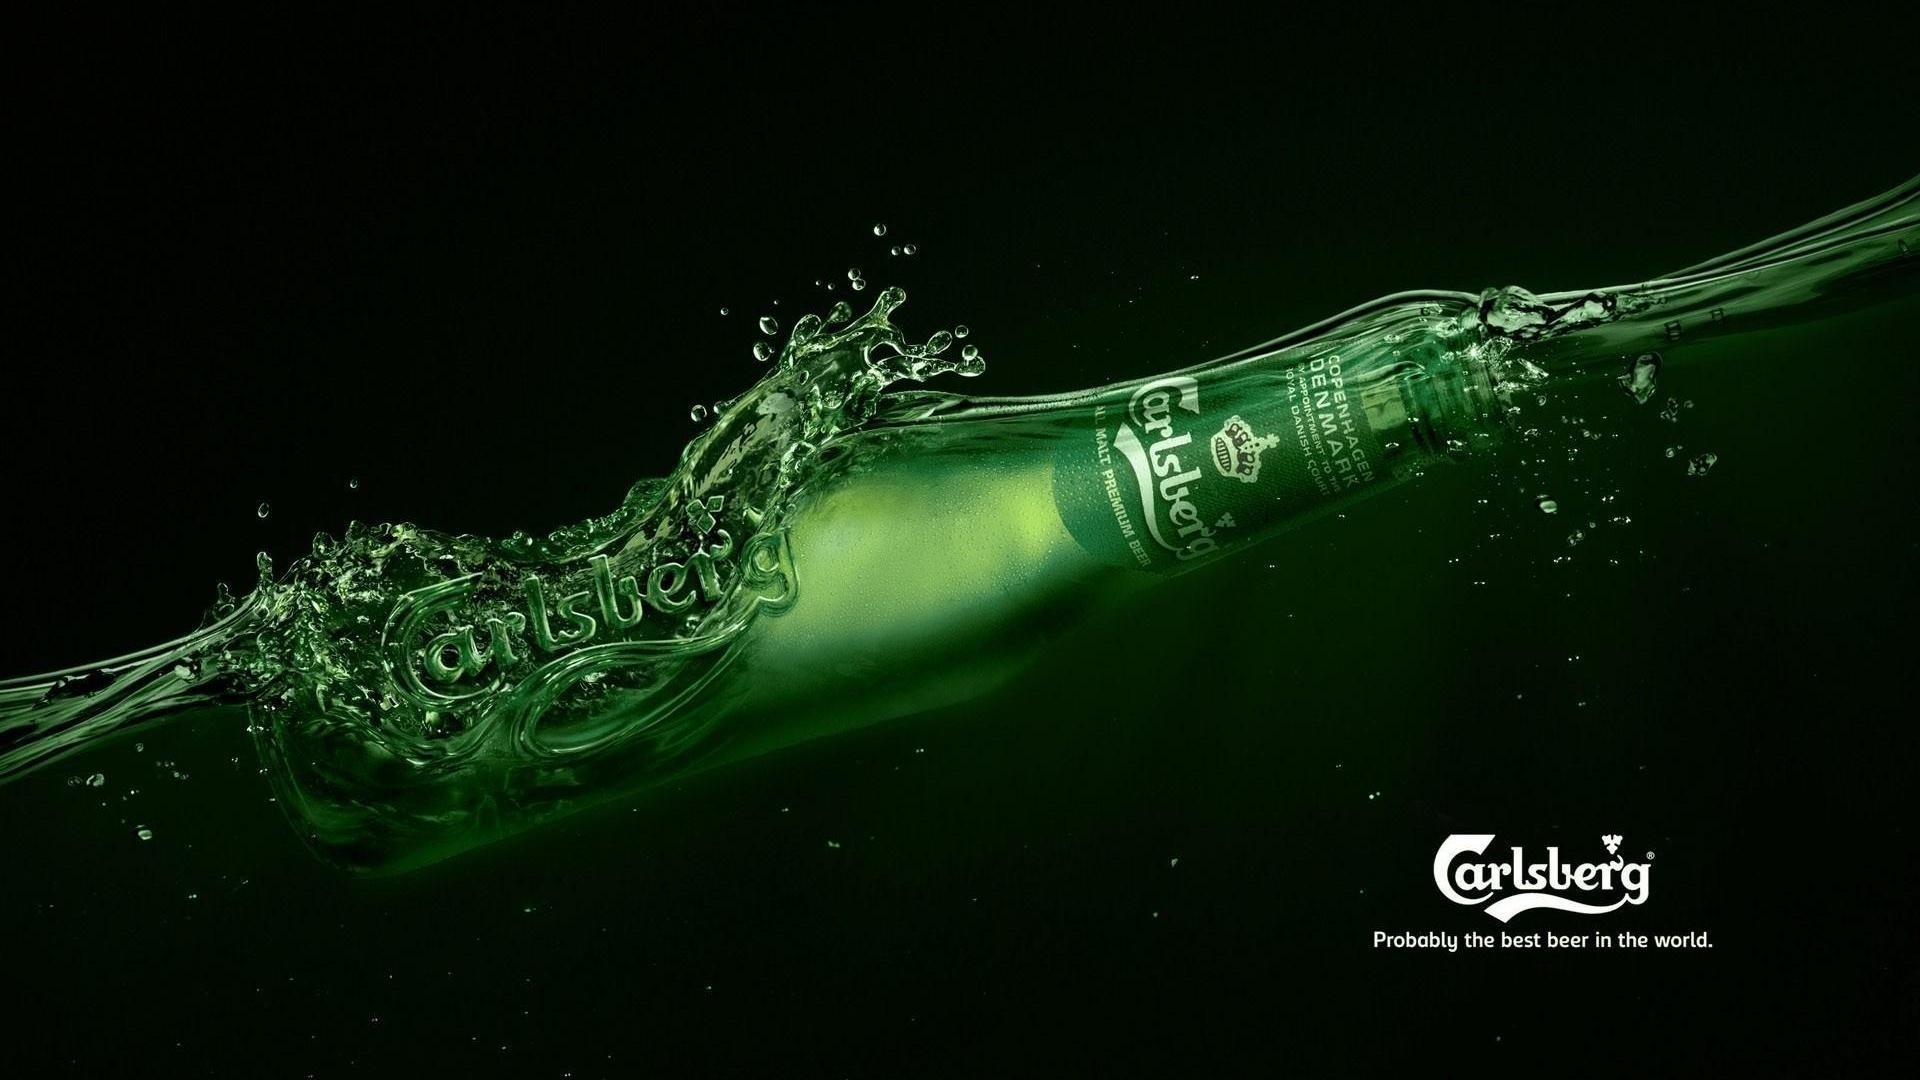 General 1920x1080 beer bottles Carlsberg alcohol food advertisements